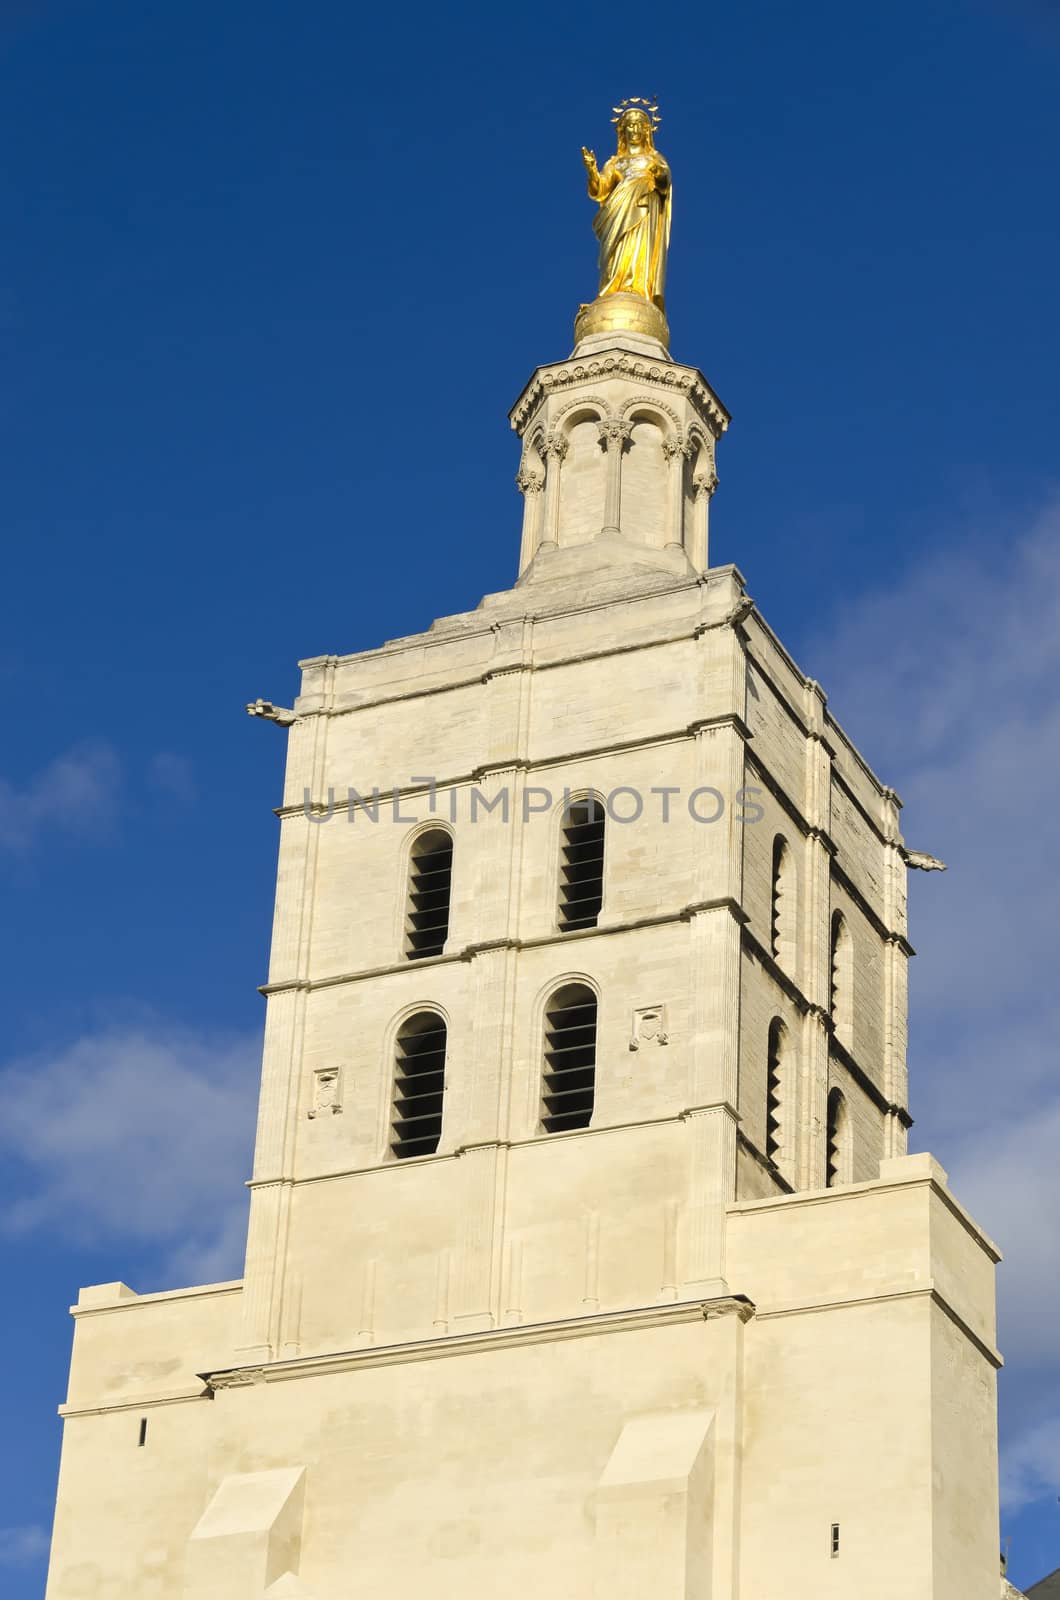 golden virgin statue in Avignon city, France